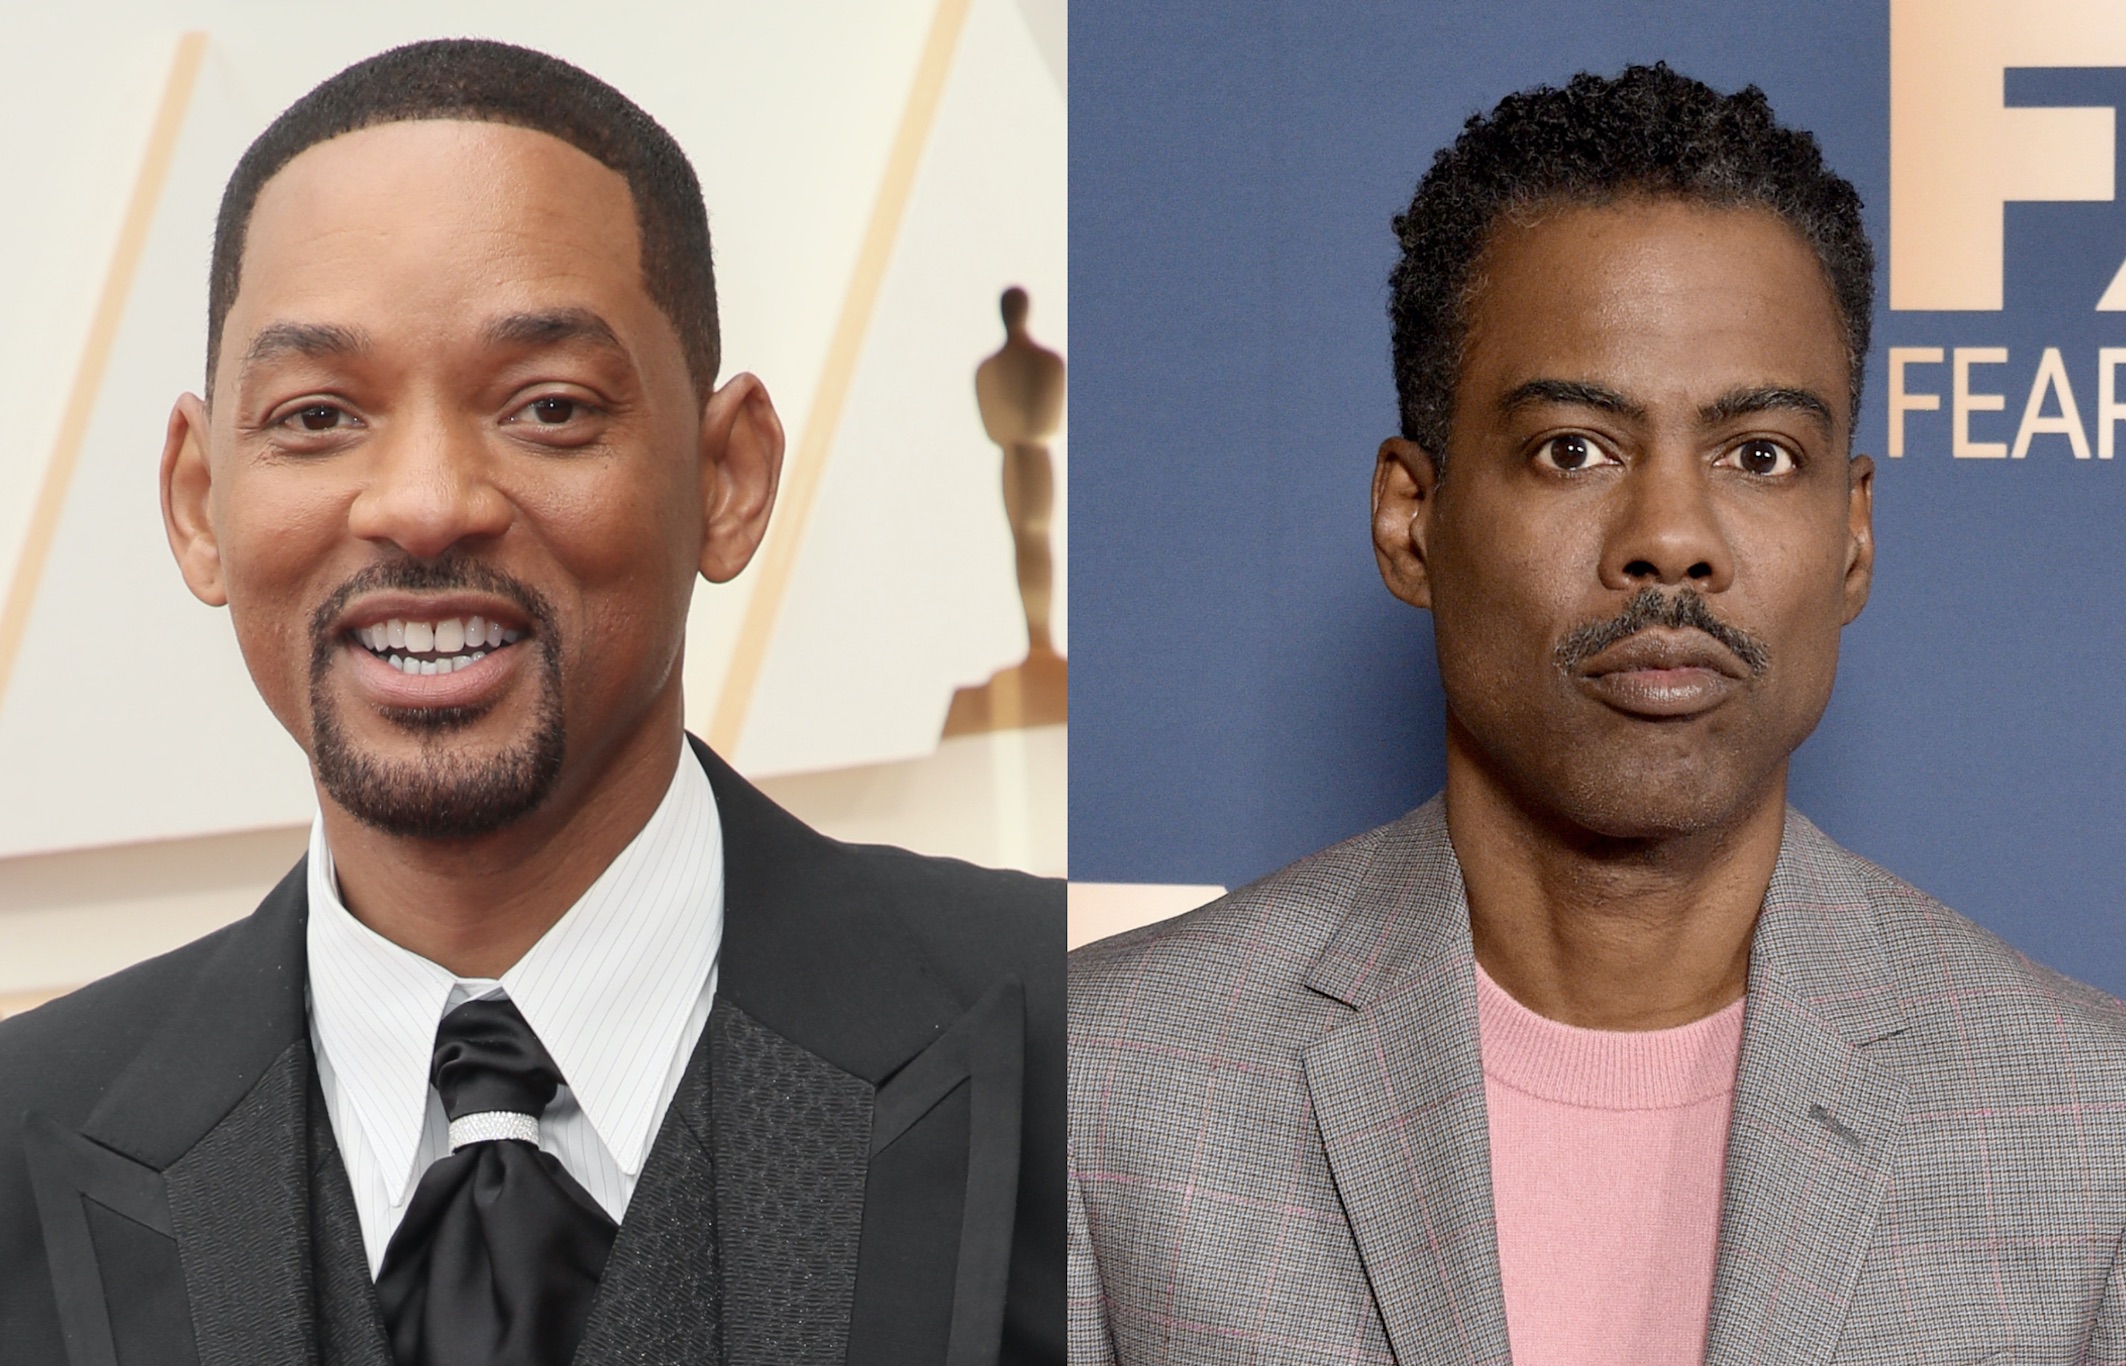 El productor de los Oscars alaba la disculpa pública de Will Smith a Chris Rock: "Está siendo muy transparente"